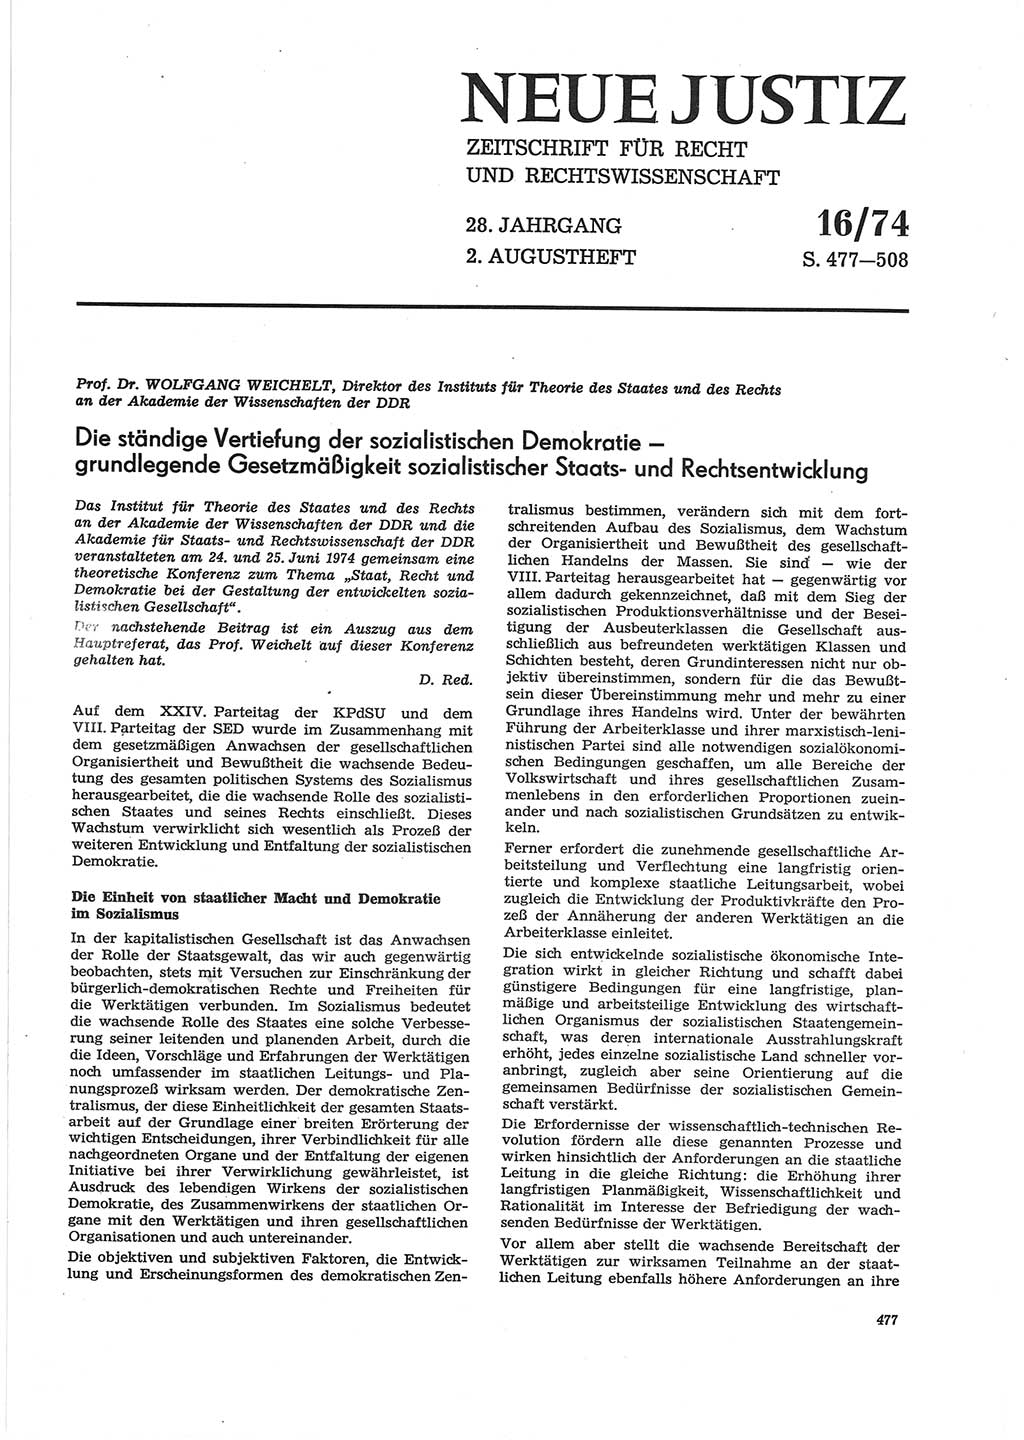 Neue Justiz (NJ), Zeitschrift für Recht und Rechtswissenschaft [Deutsche Demokratische Republik (DDR)], 28. Jahrgang 1974, Seite 477 (NJ DDR 1974, S. 477)